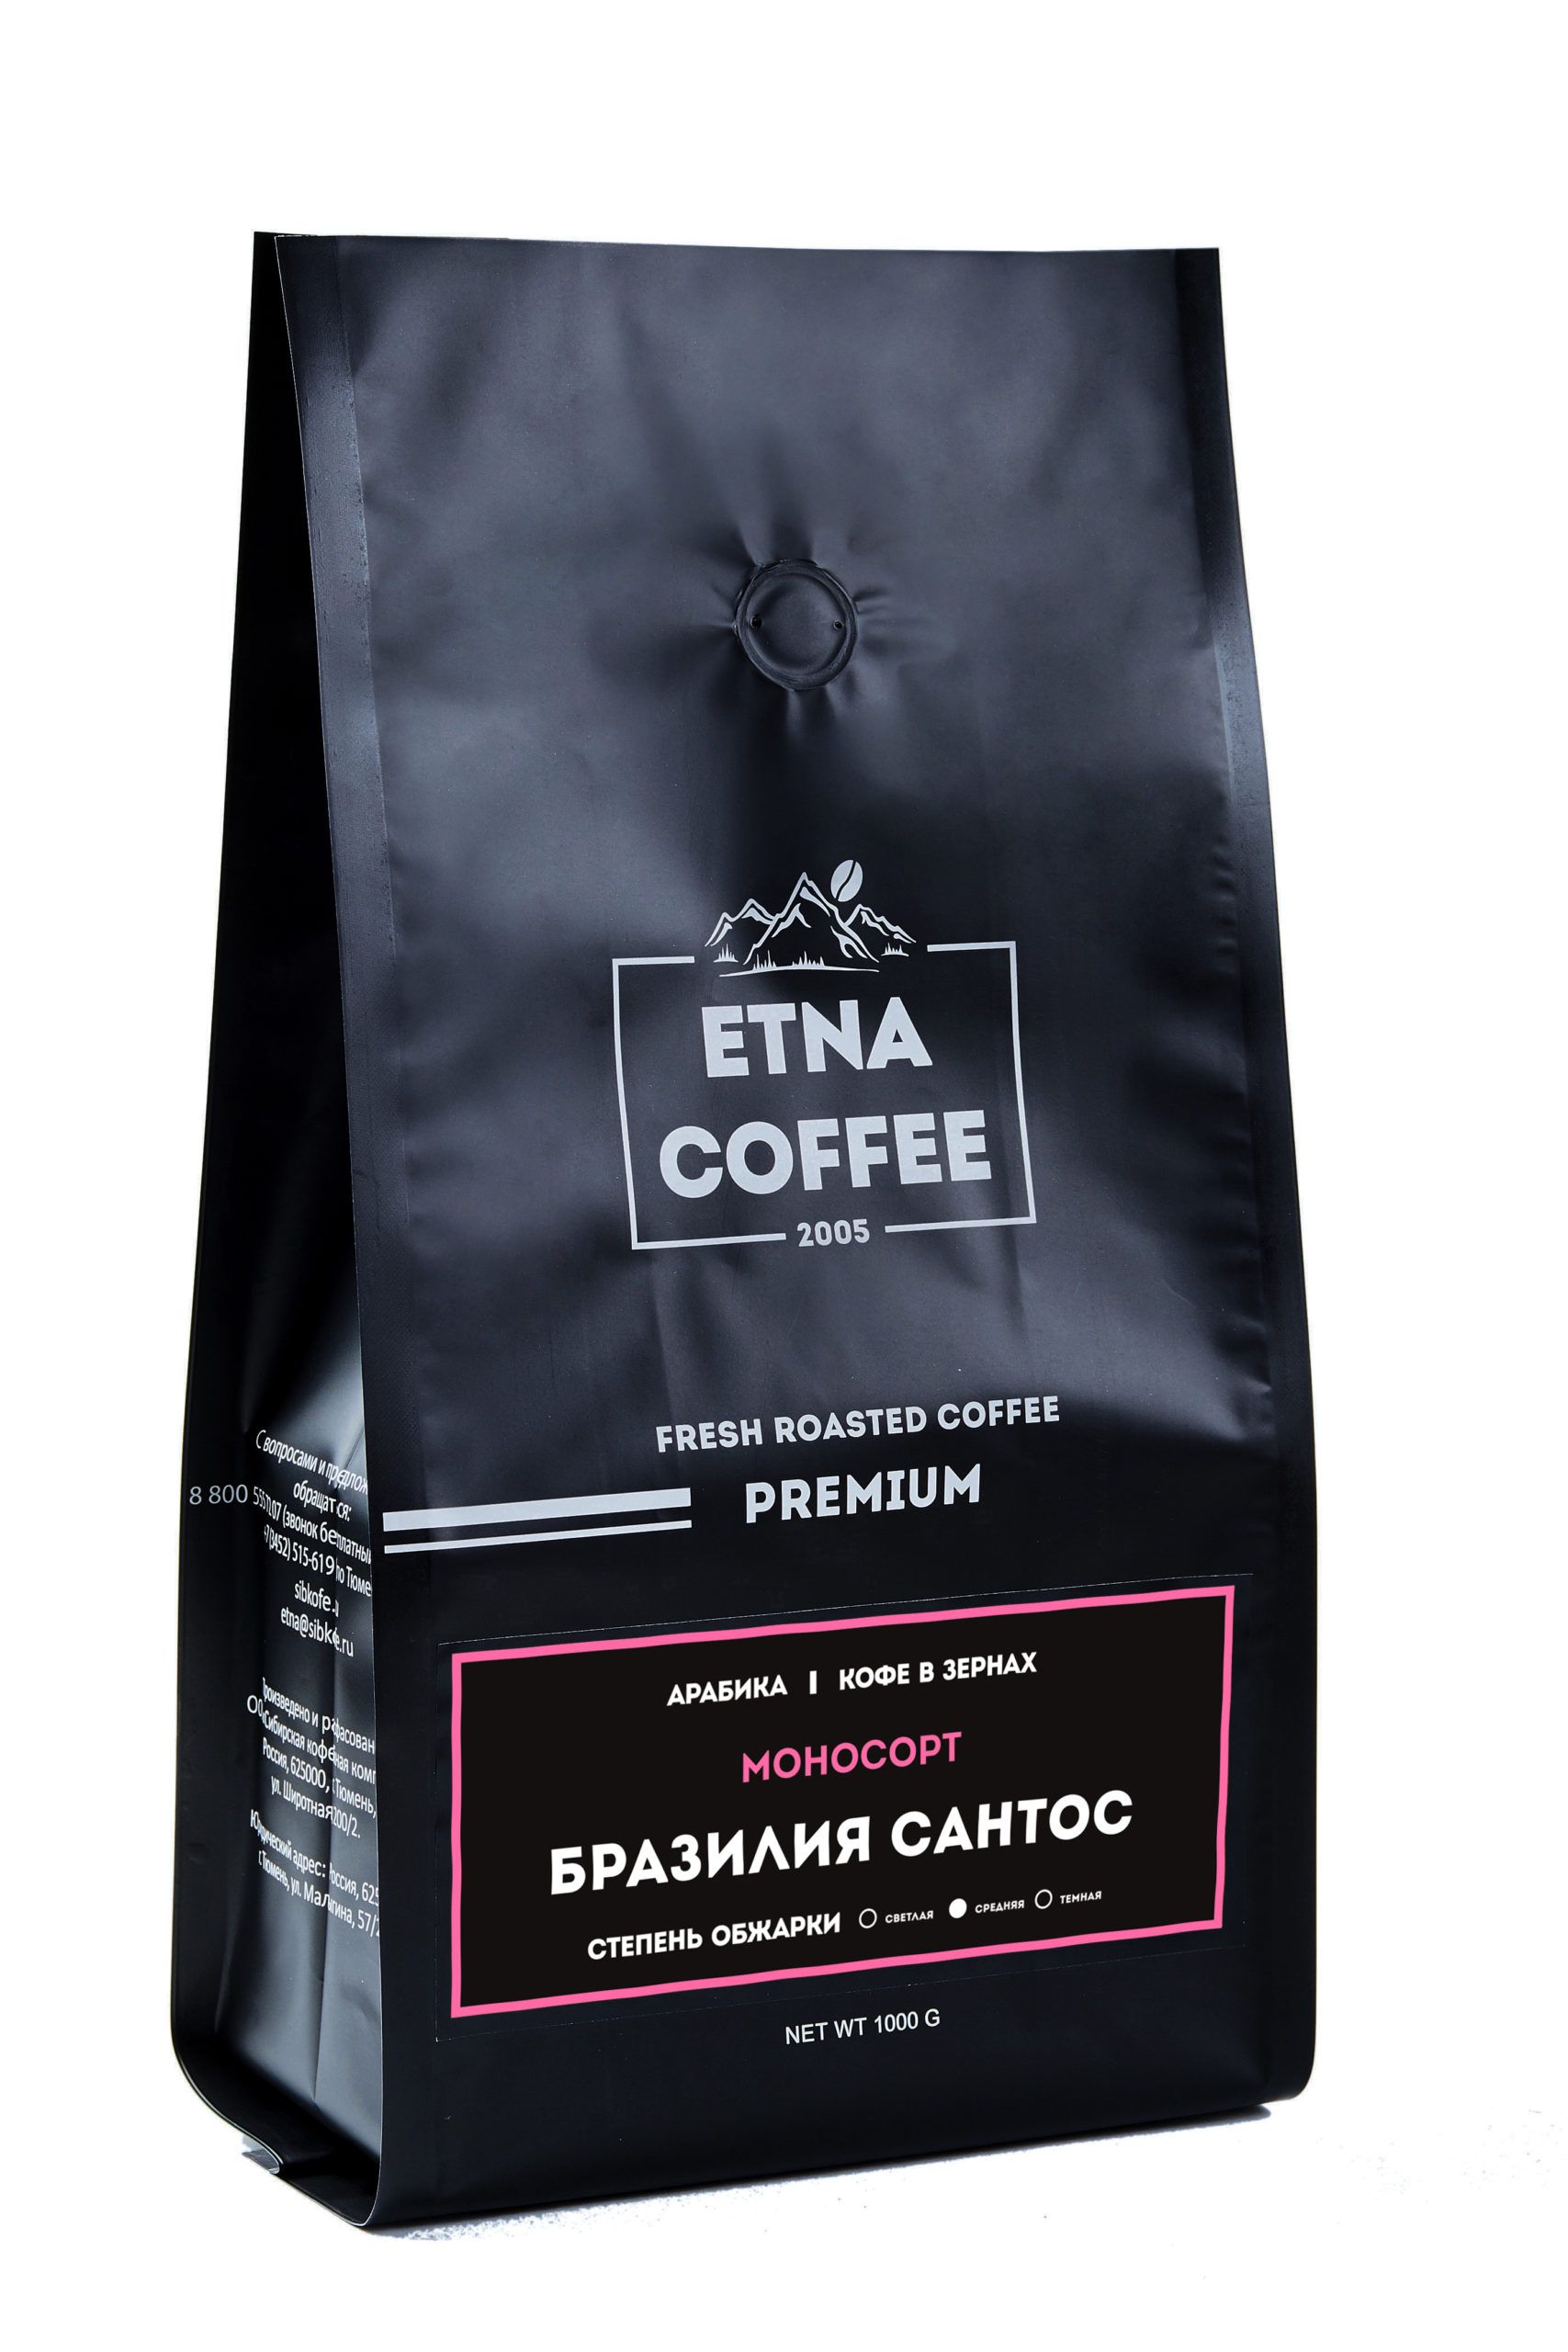 Etna Coffee